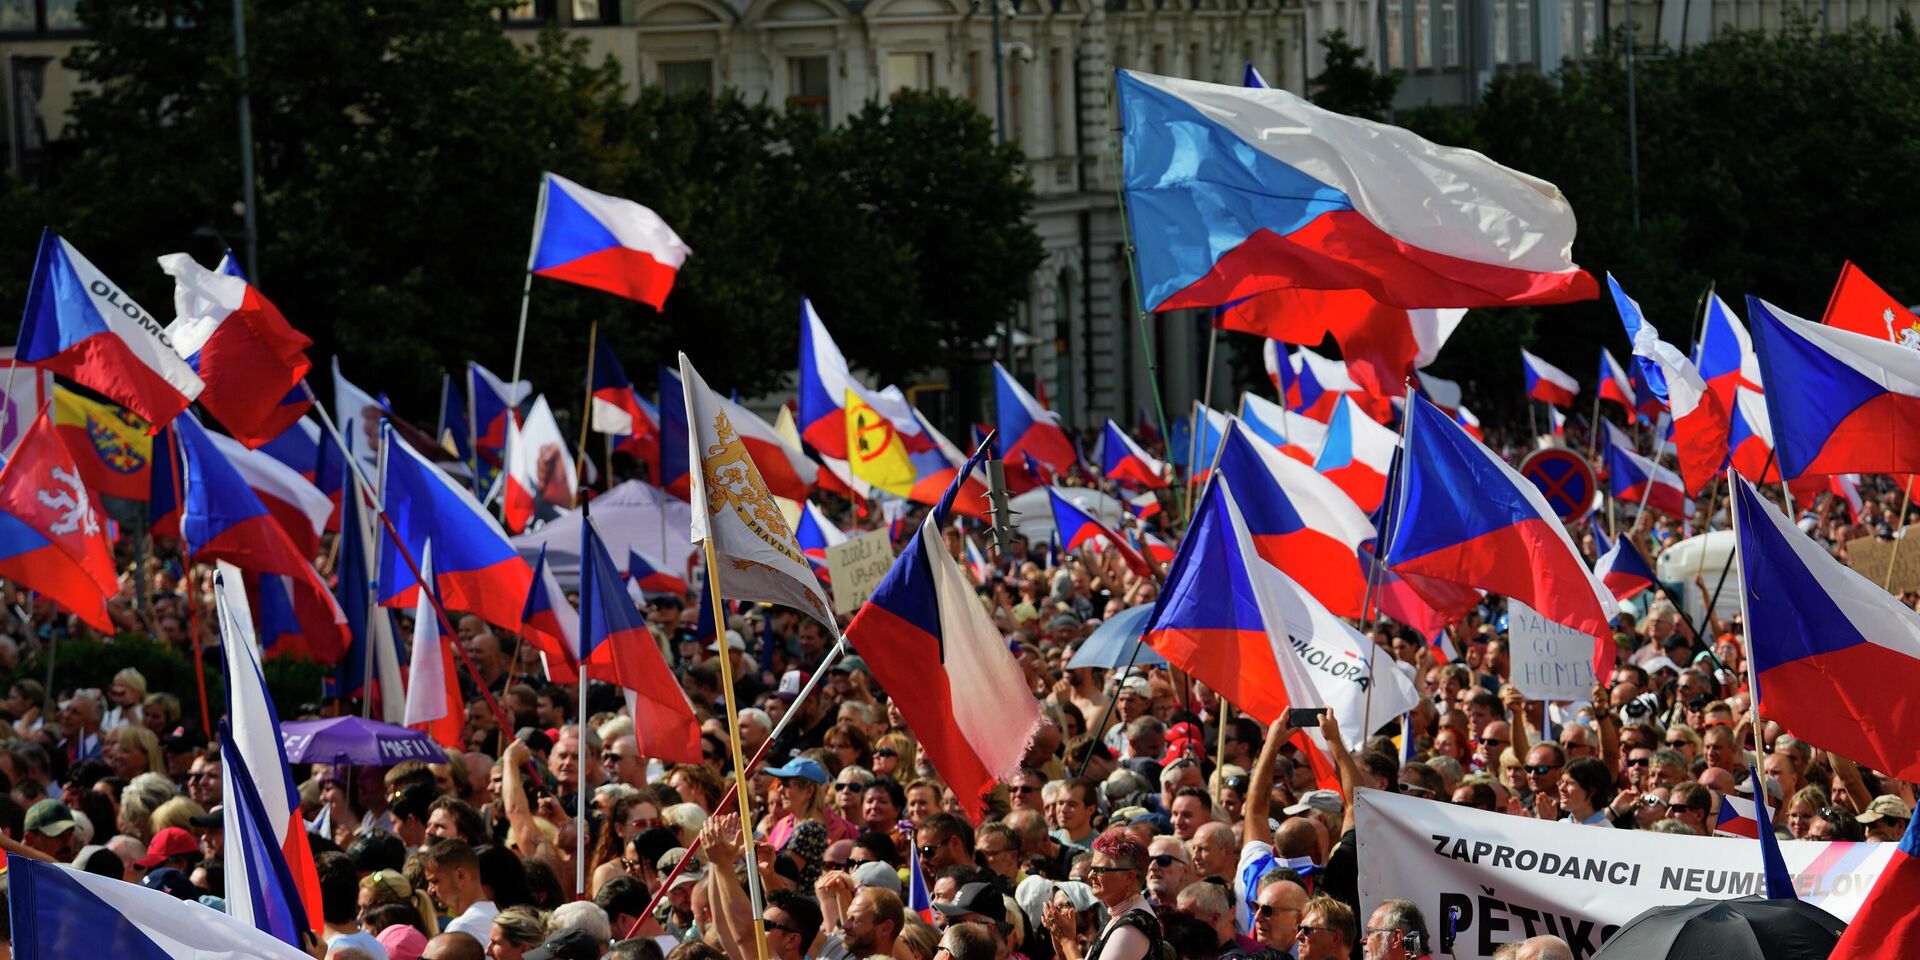 Антиправительственная демонстрация в Праге, Чехия. 3 сентября 2022 года. - ИноСМИ, 1920, 07.09.2022